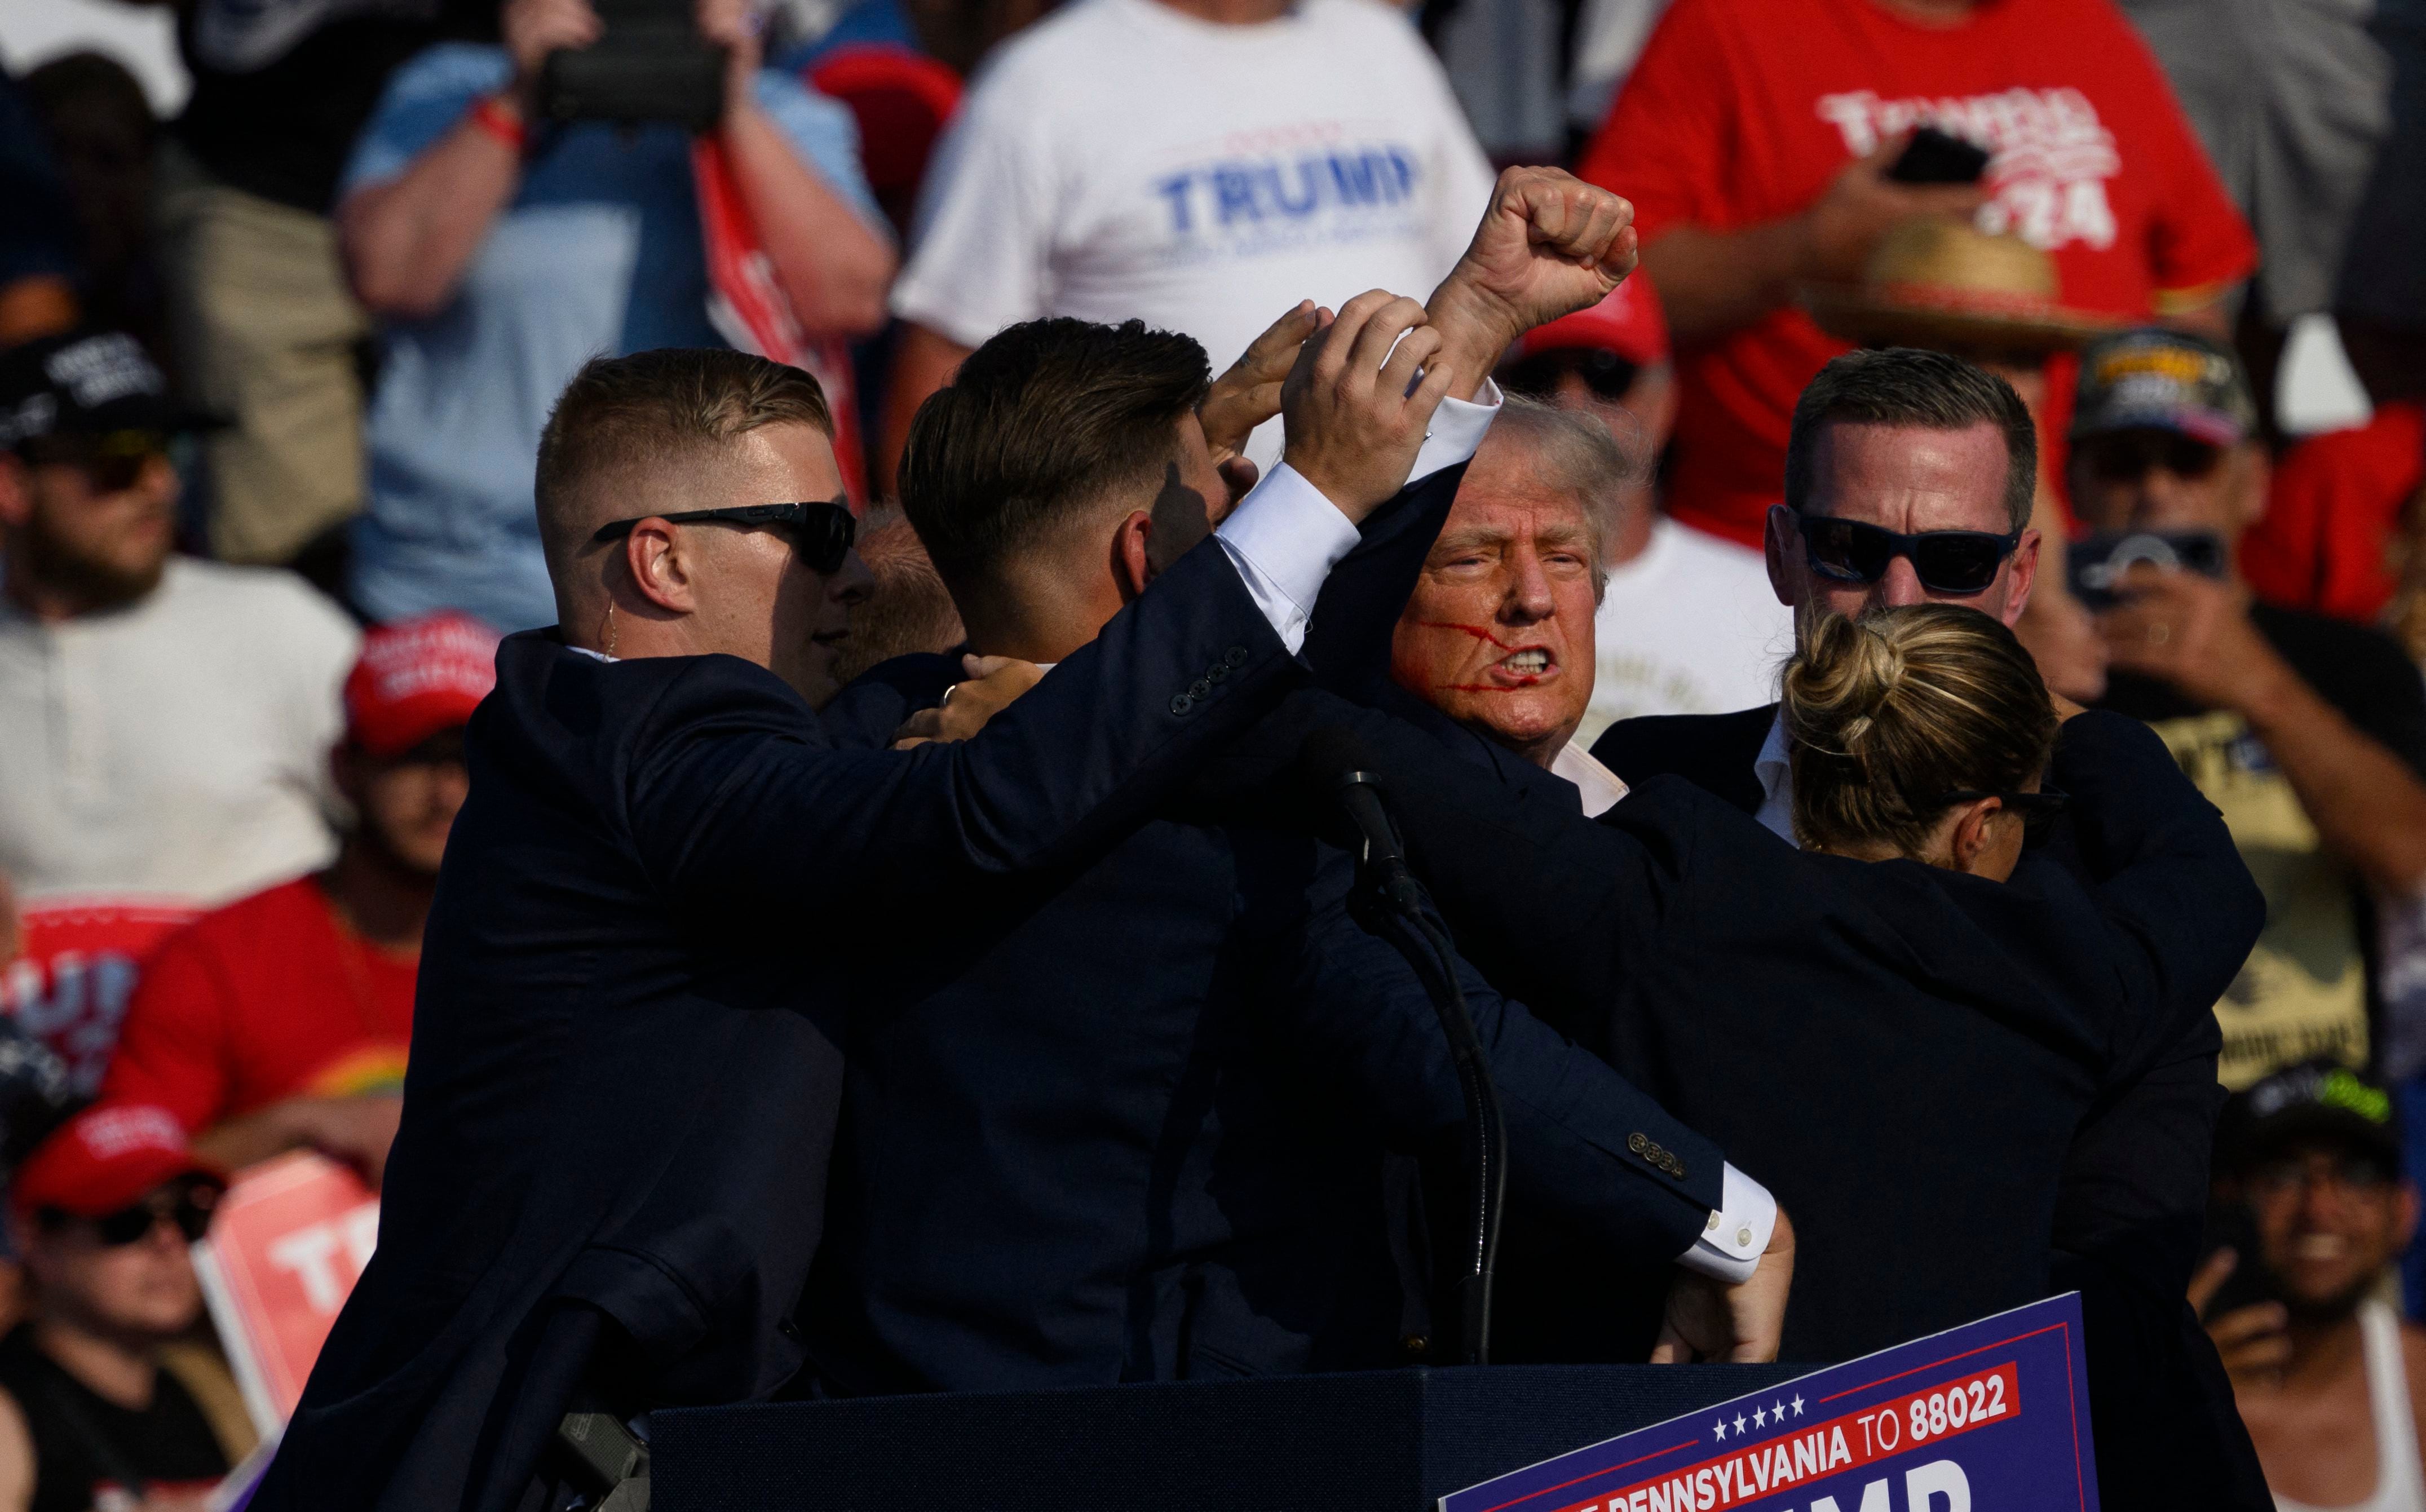 Agentes del Servicio Secreto rodean al ex presidente y candidato presidencial republicano Donald Trump en el escenario después de resultar herido durante un mitin el 13 de julio de 2024 en Butler, Pensilvania.